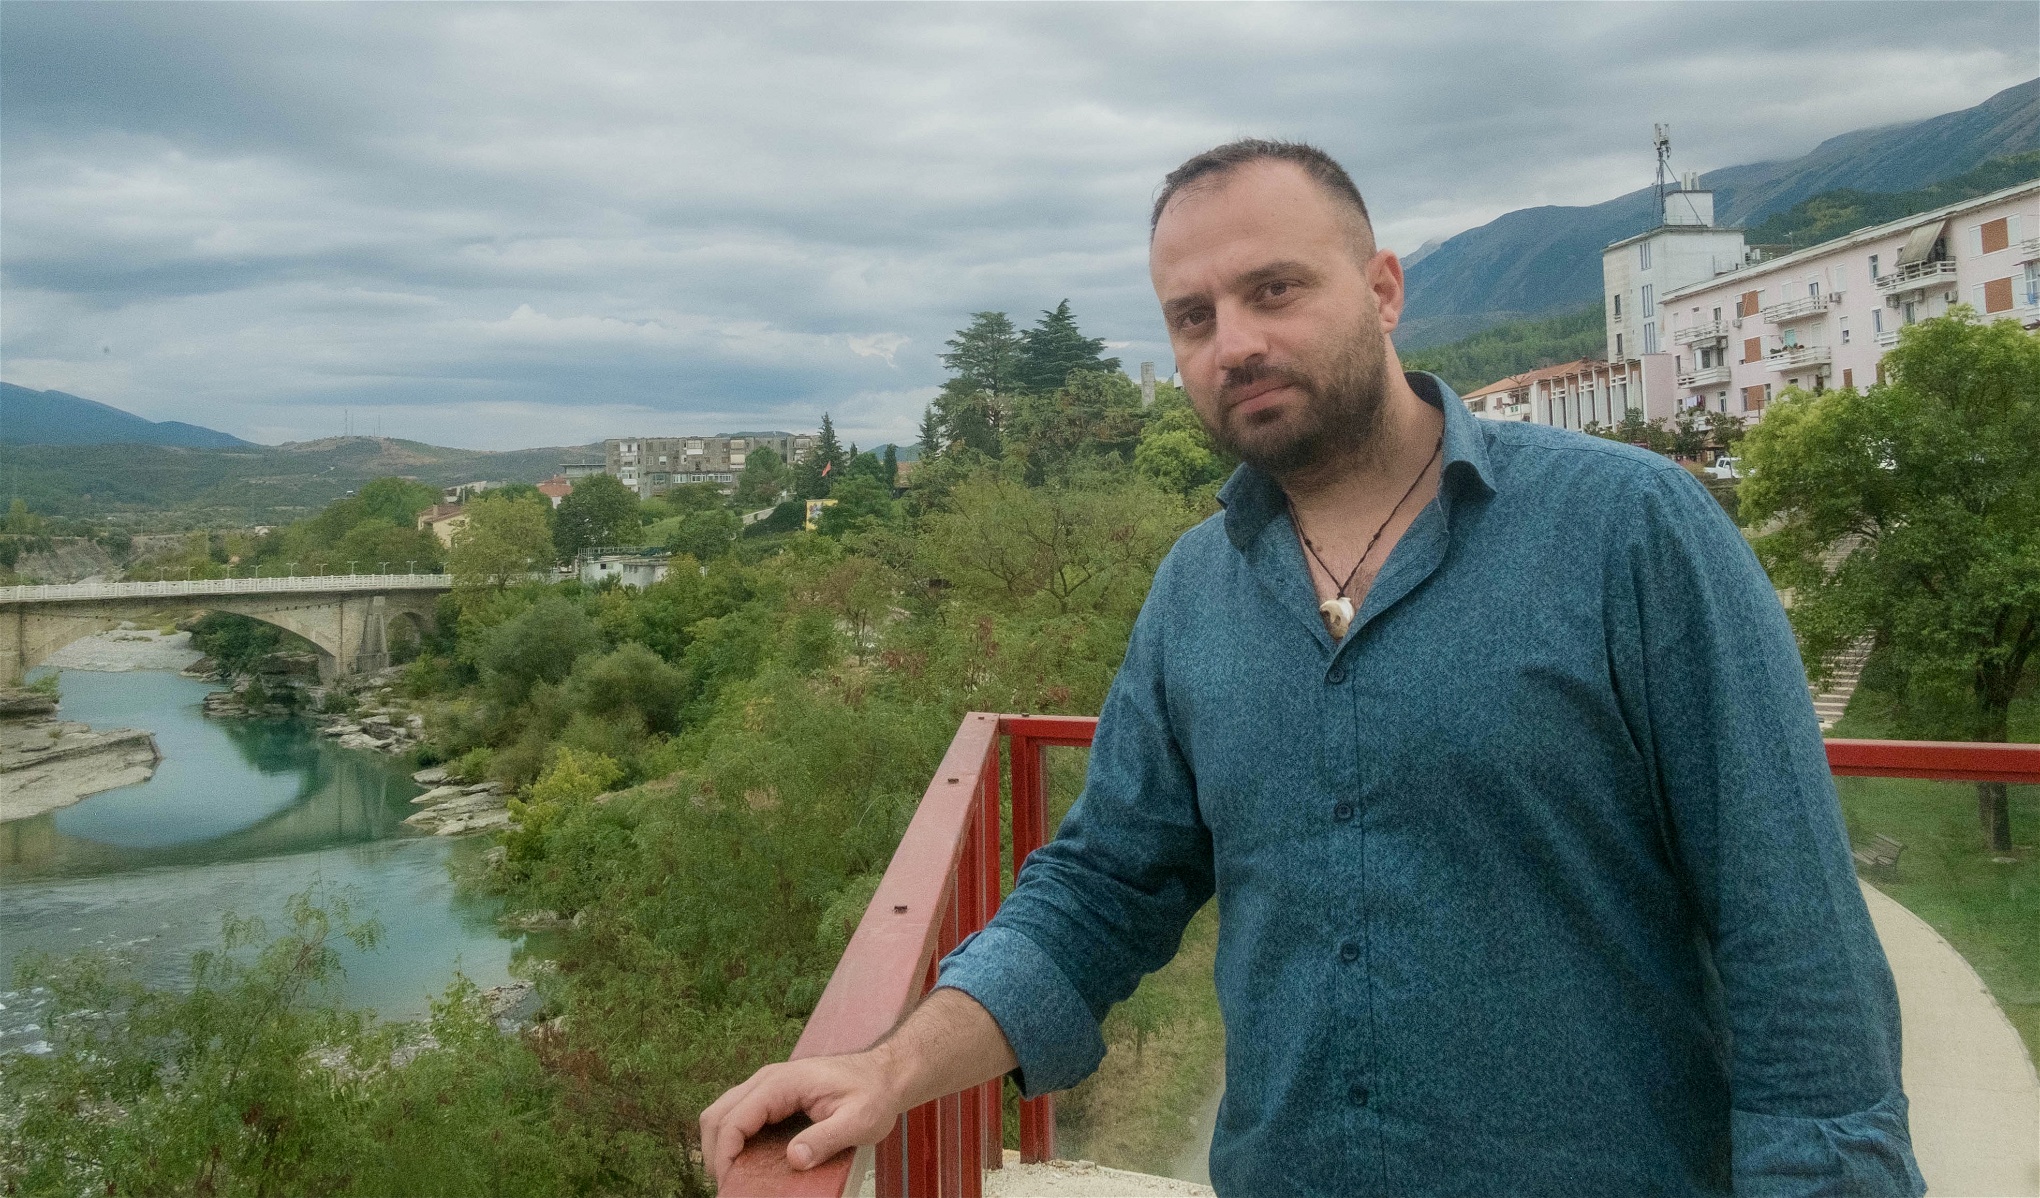 Foto: Enes MehmedagicKliti Nurka menar att det är ovanligt många som återvänder till staden, jämfört med andra albanska städer: "Jag själv hade nog aldrig återvänt om inte floden fanns här". Foto: Enes Mehmedagic